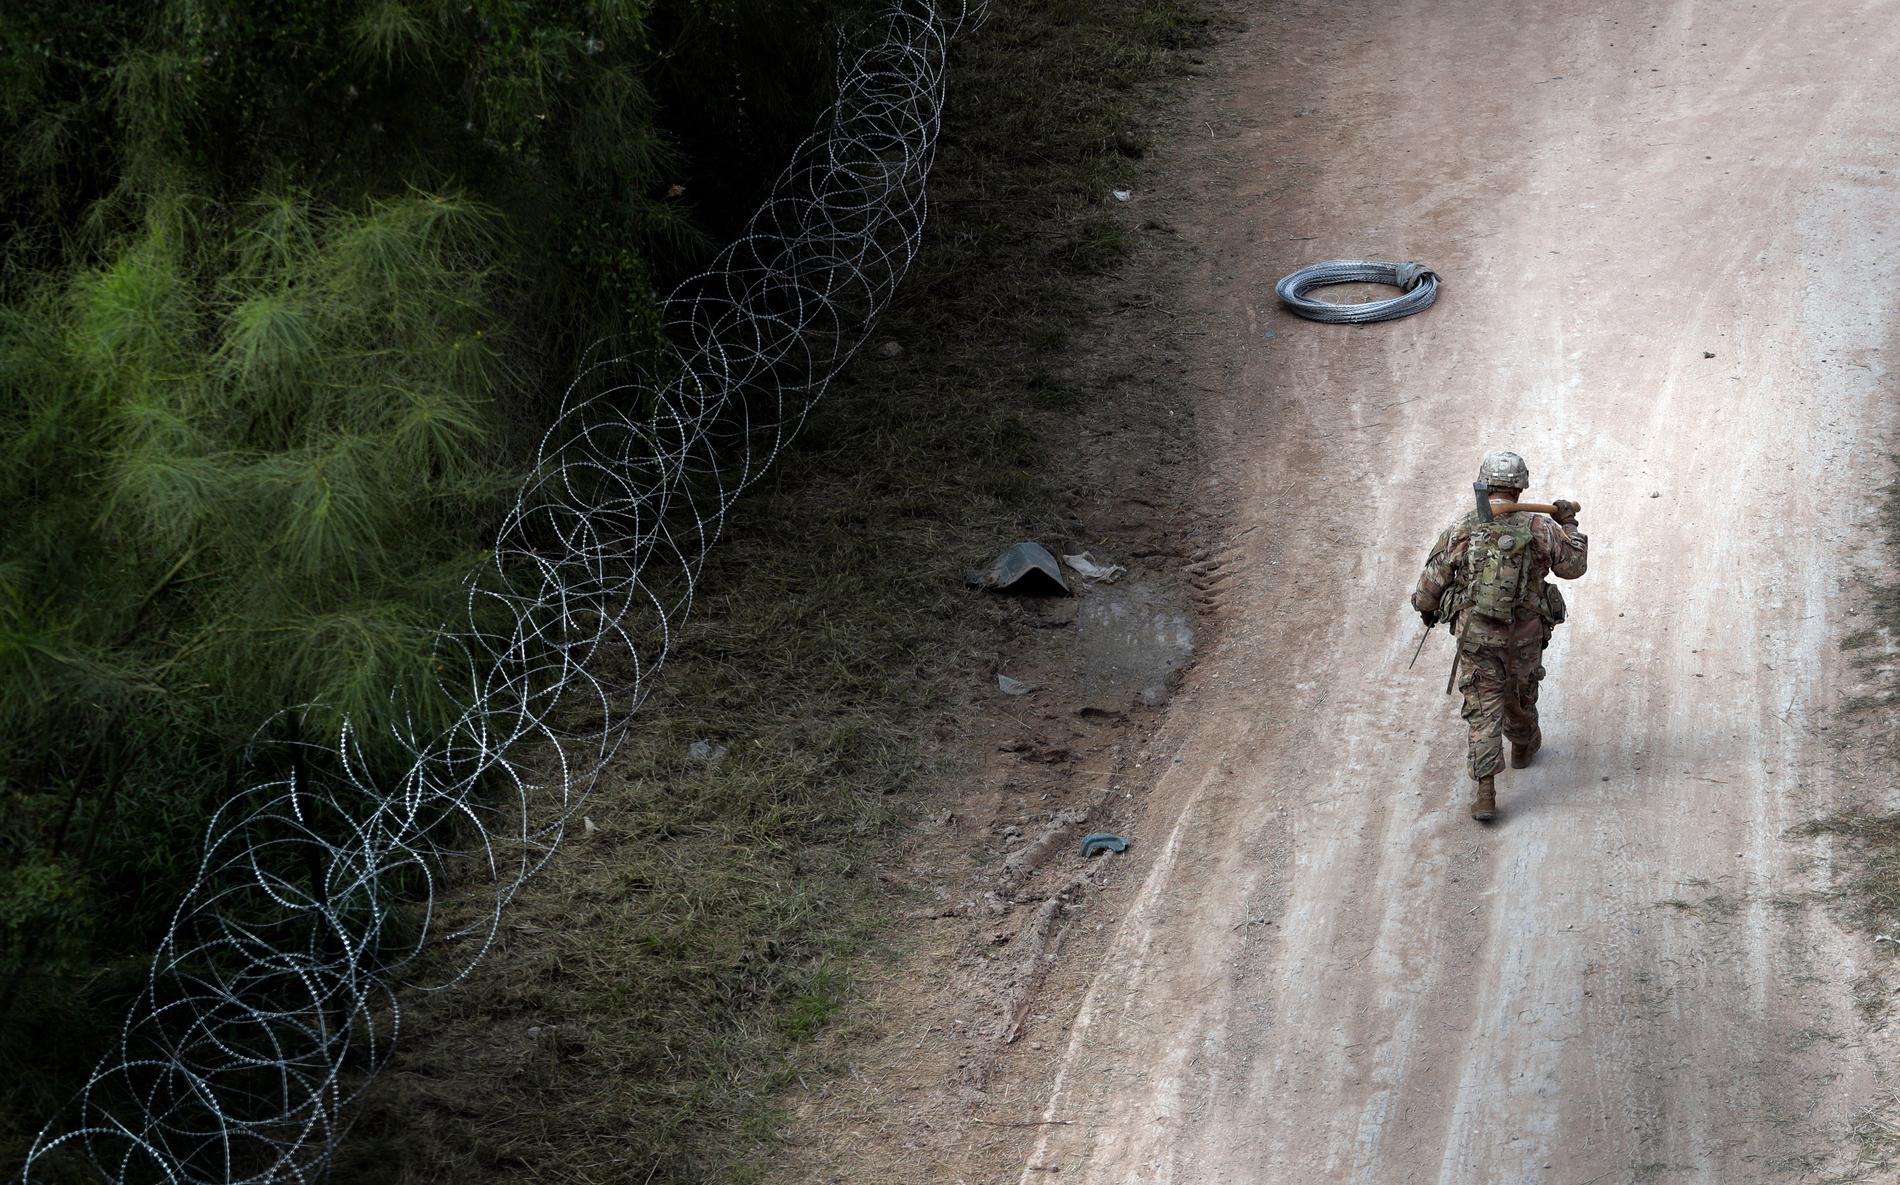 Amerikanska soldater sätter upp taggtråd för att stärka gränsområdet mellan USA och Mexiko i närheten av McAllen i Texas. Själva gränsen utgörs dock av floden Rio Grande.